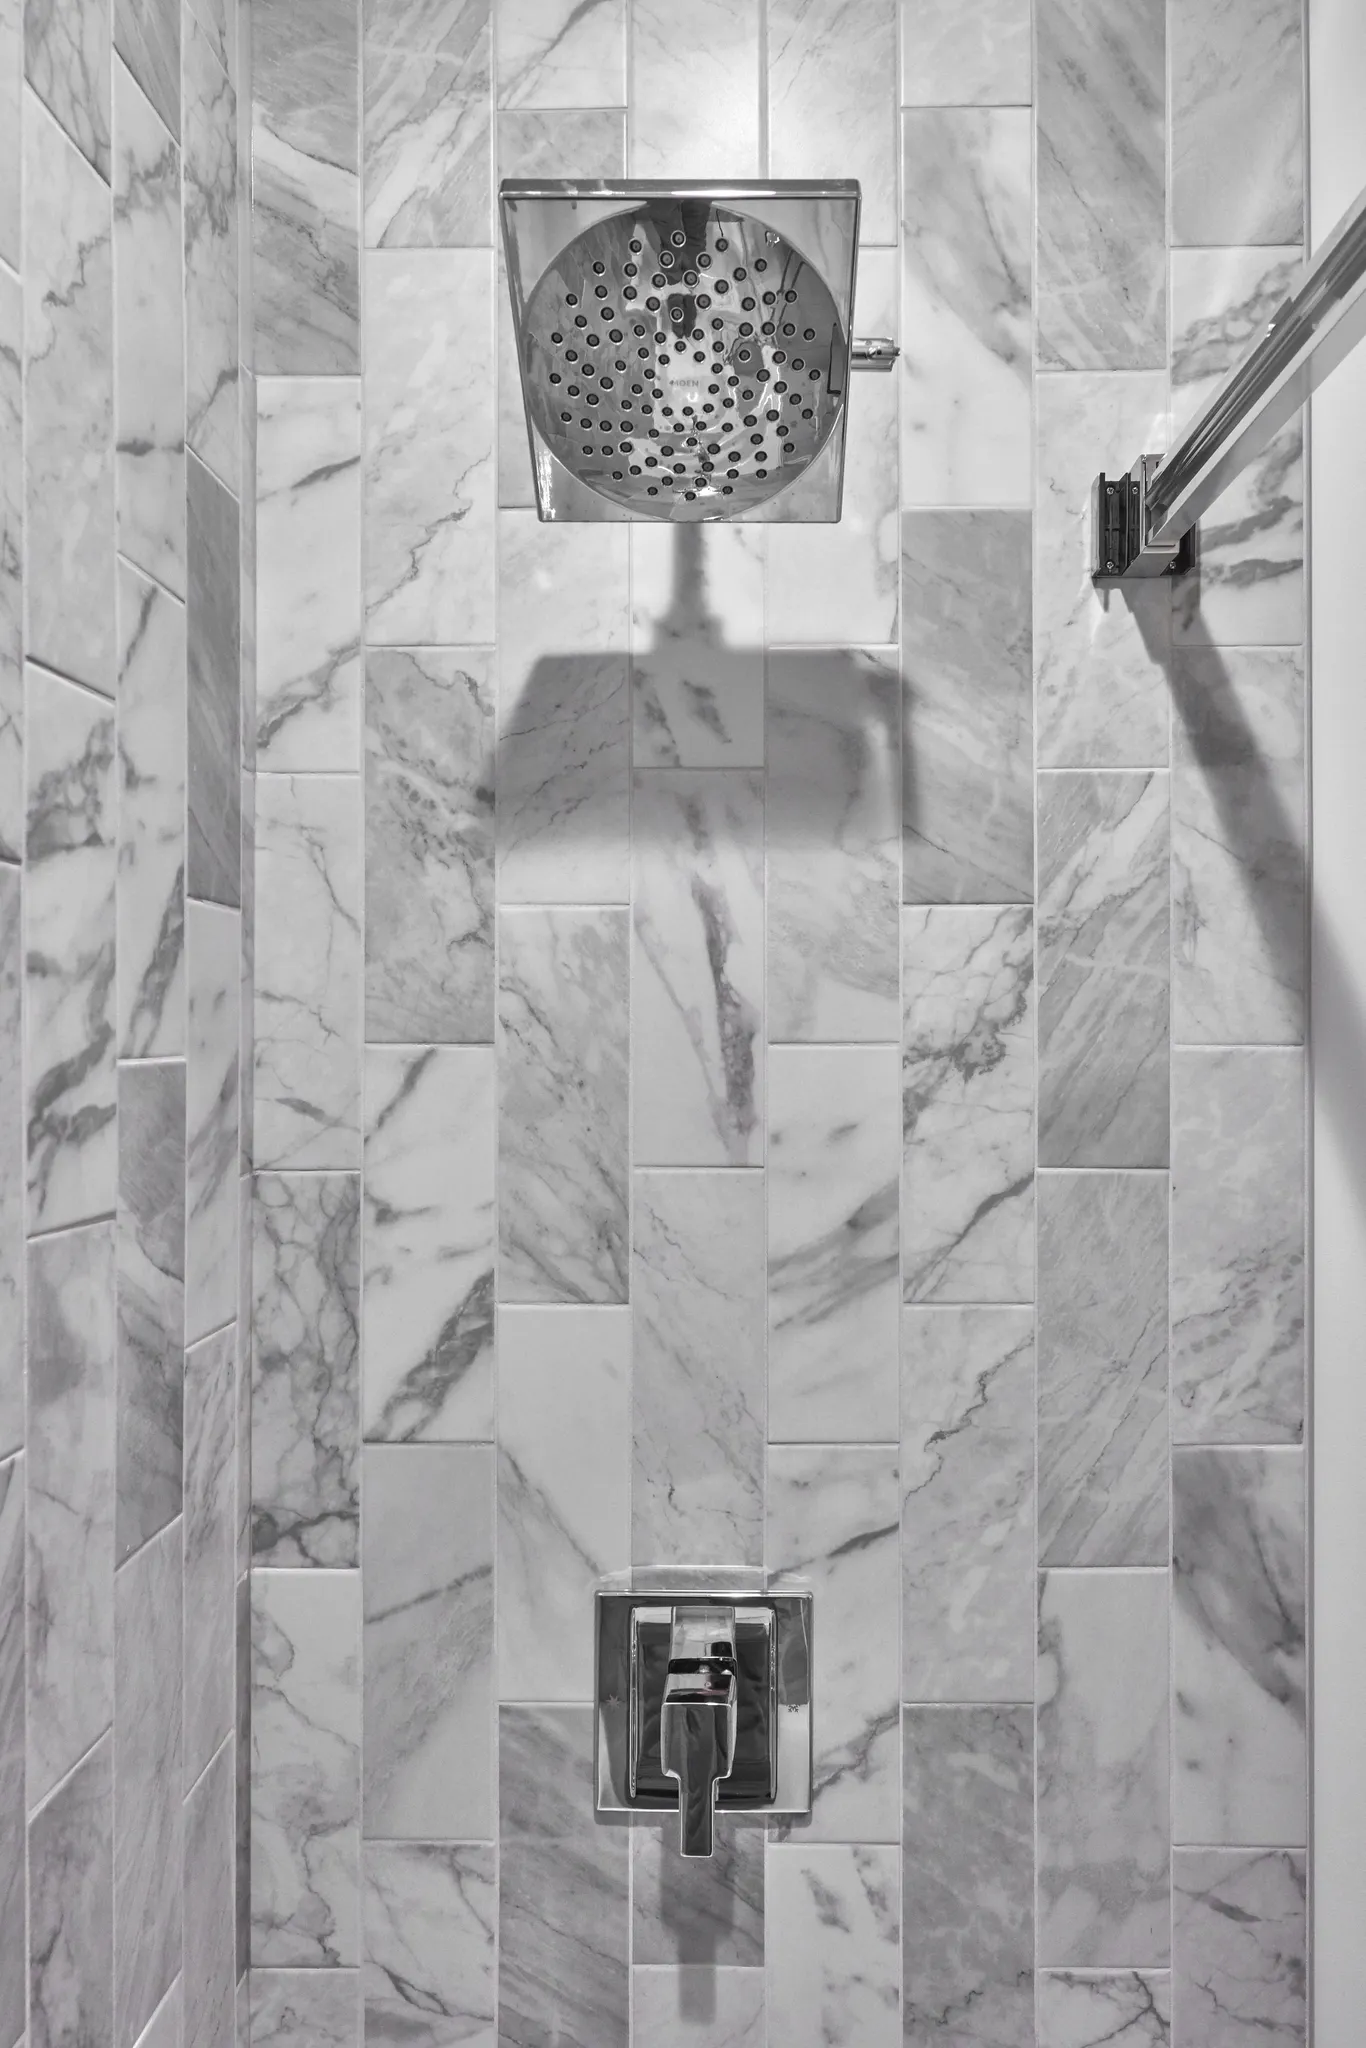 Phoenix, AZ master and guest baths - Guest bath - Shower tile and fixtures